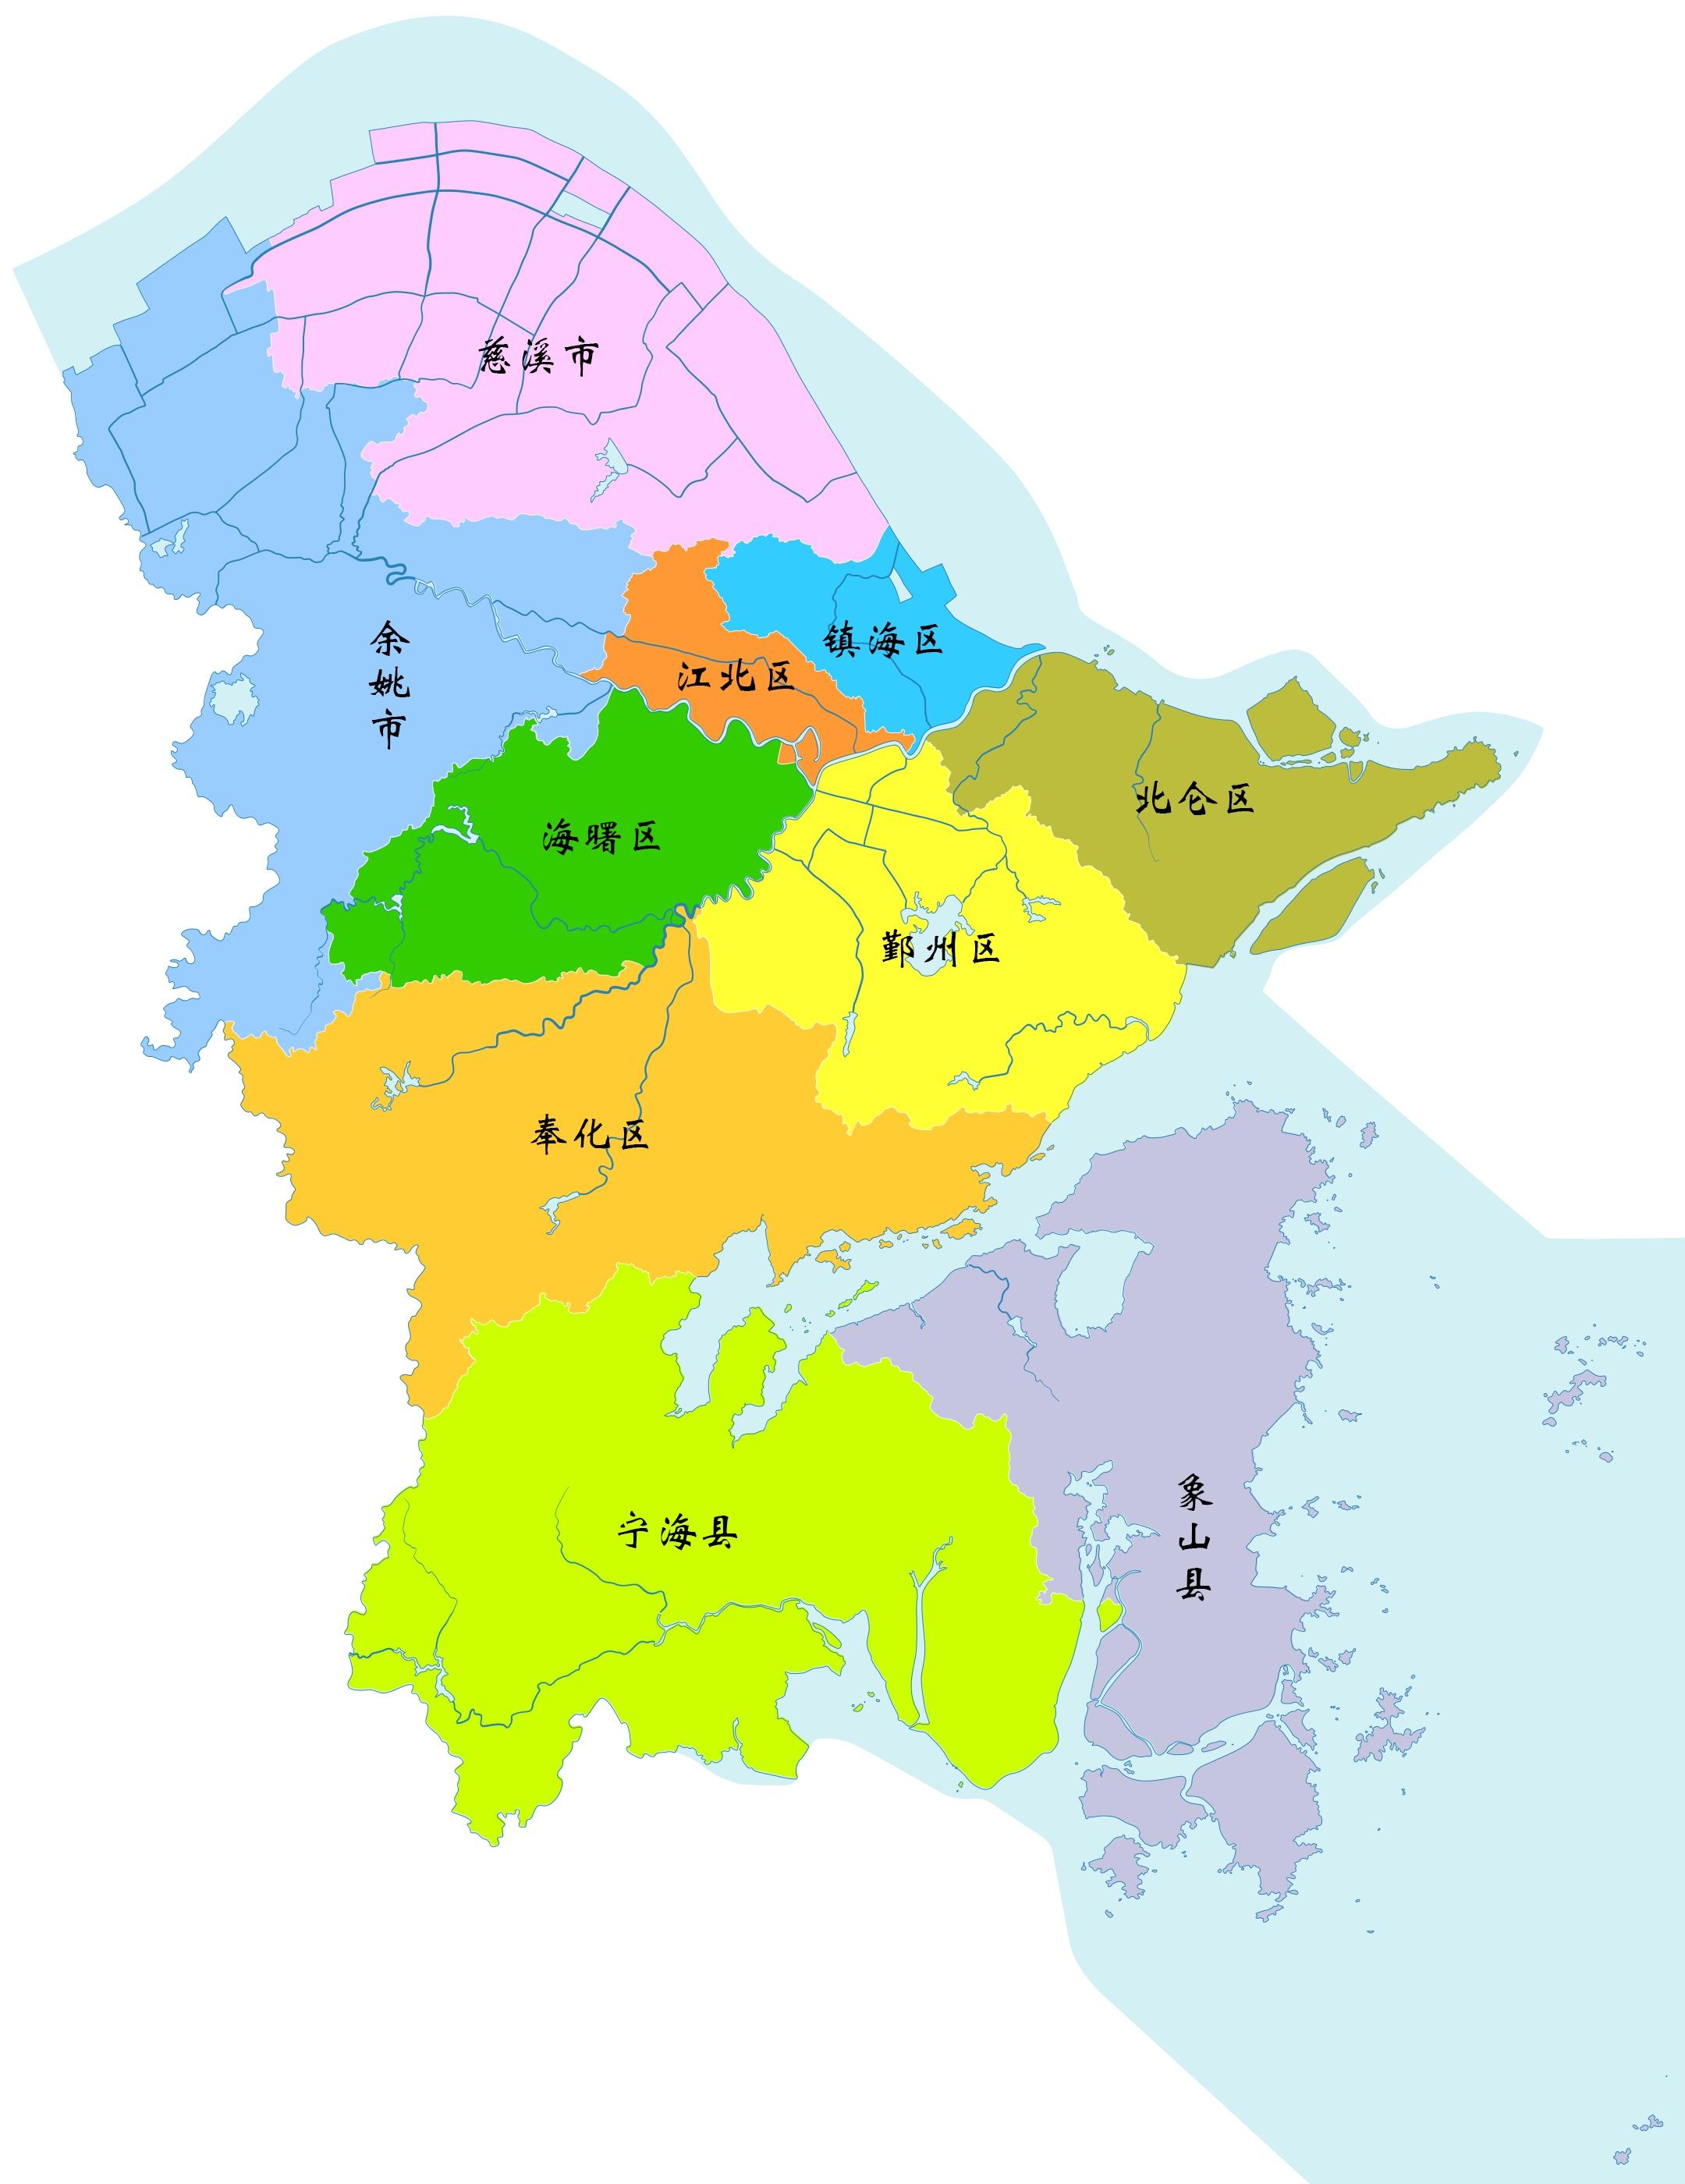 宁波市6区2市2县标准地图 2019审核版 - 哔哩哔哩